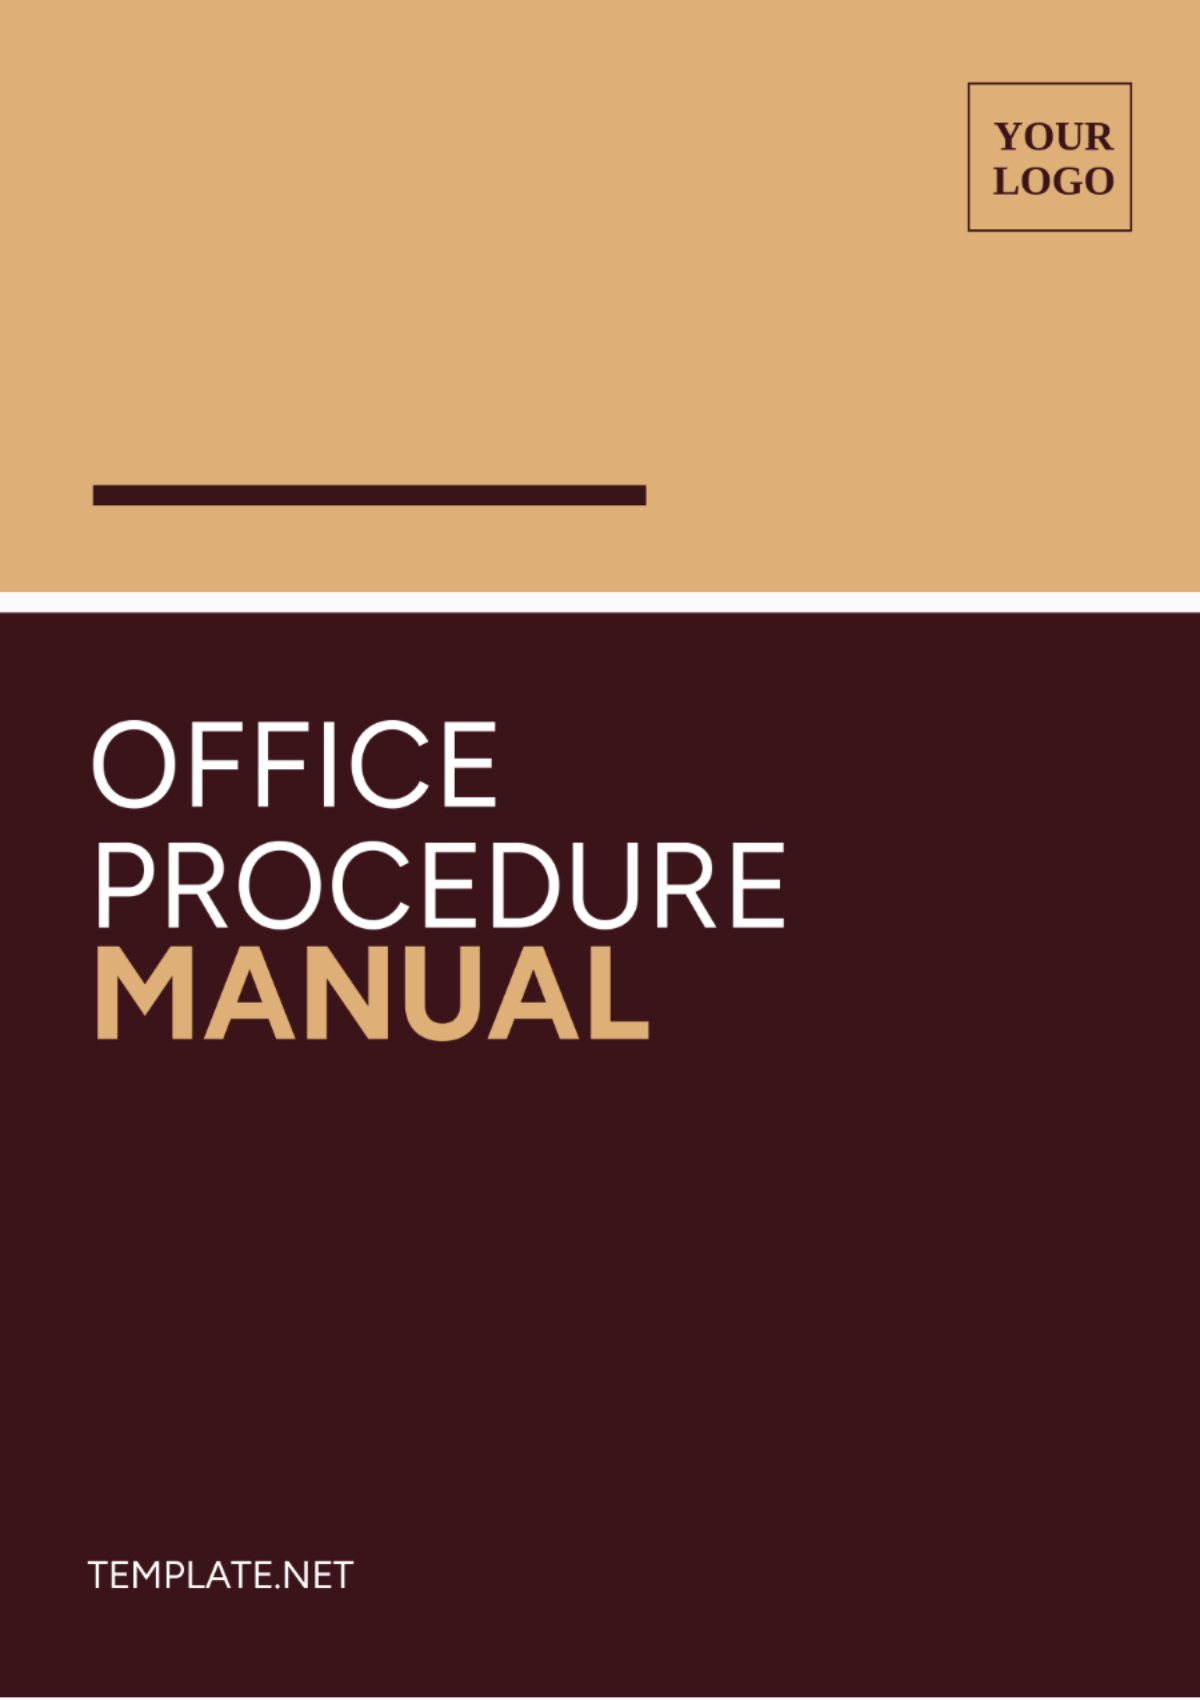 Office Procedure Manual Template